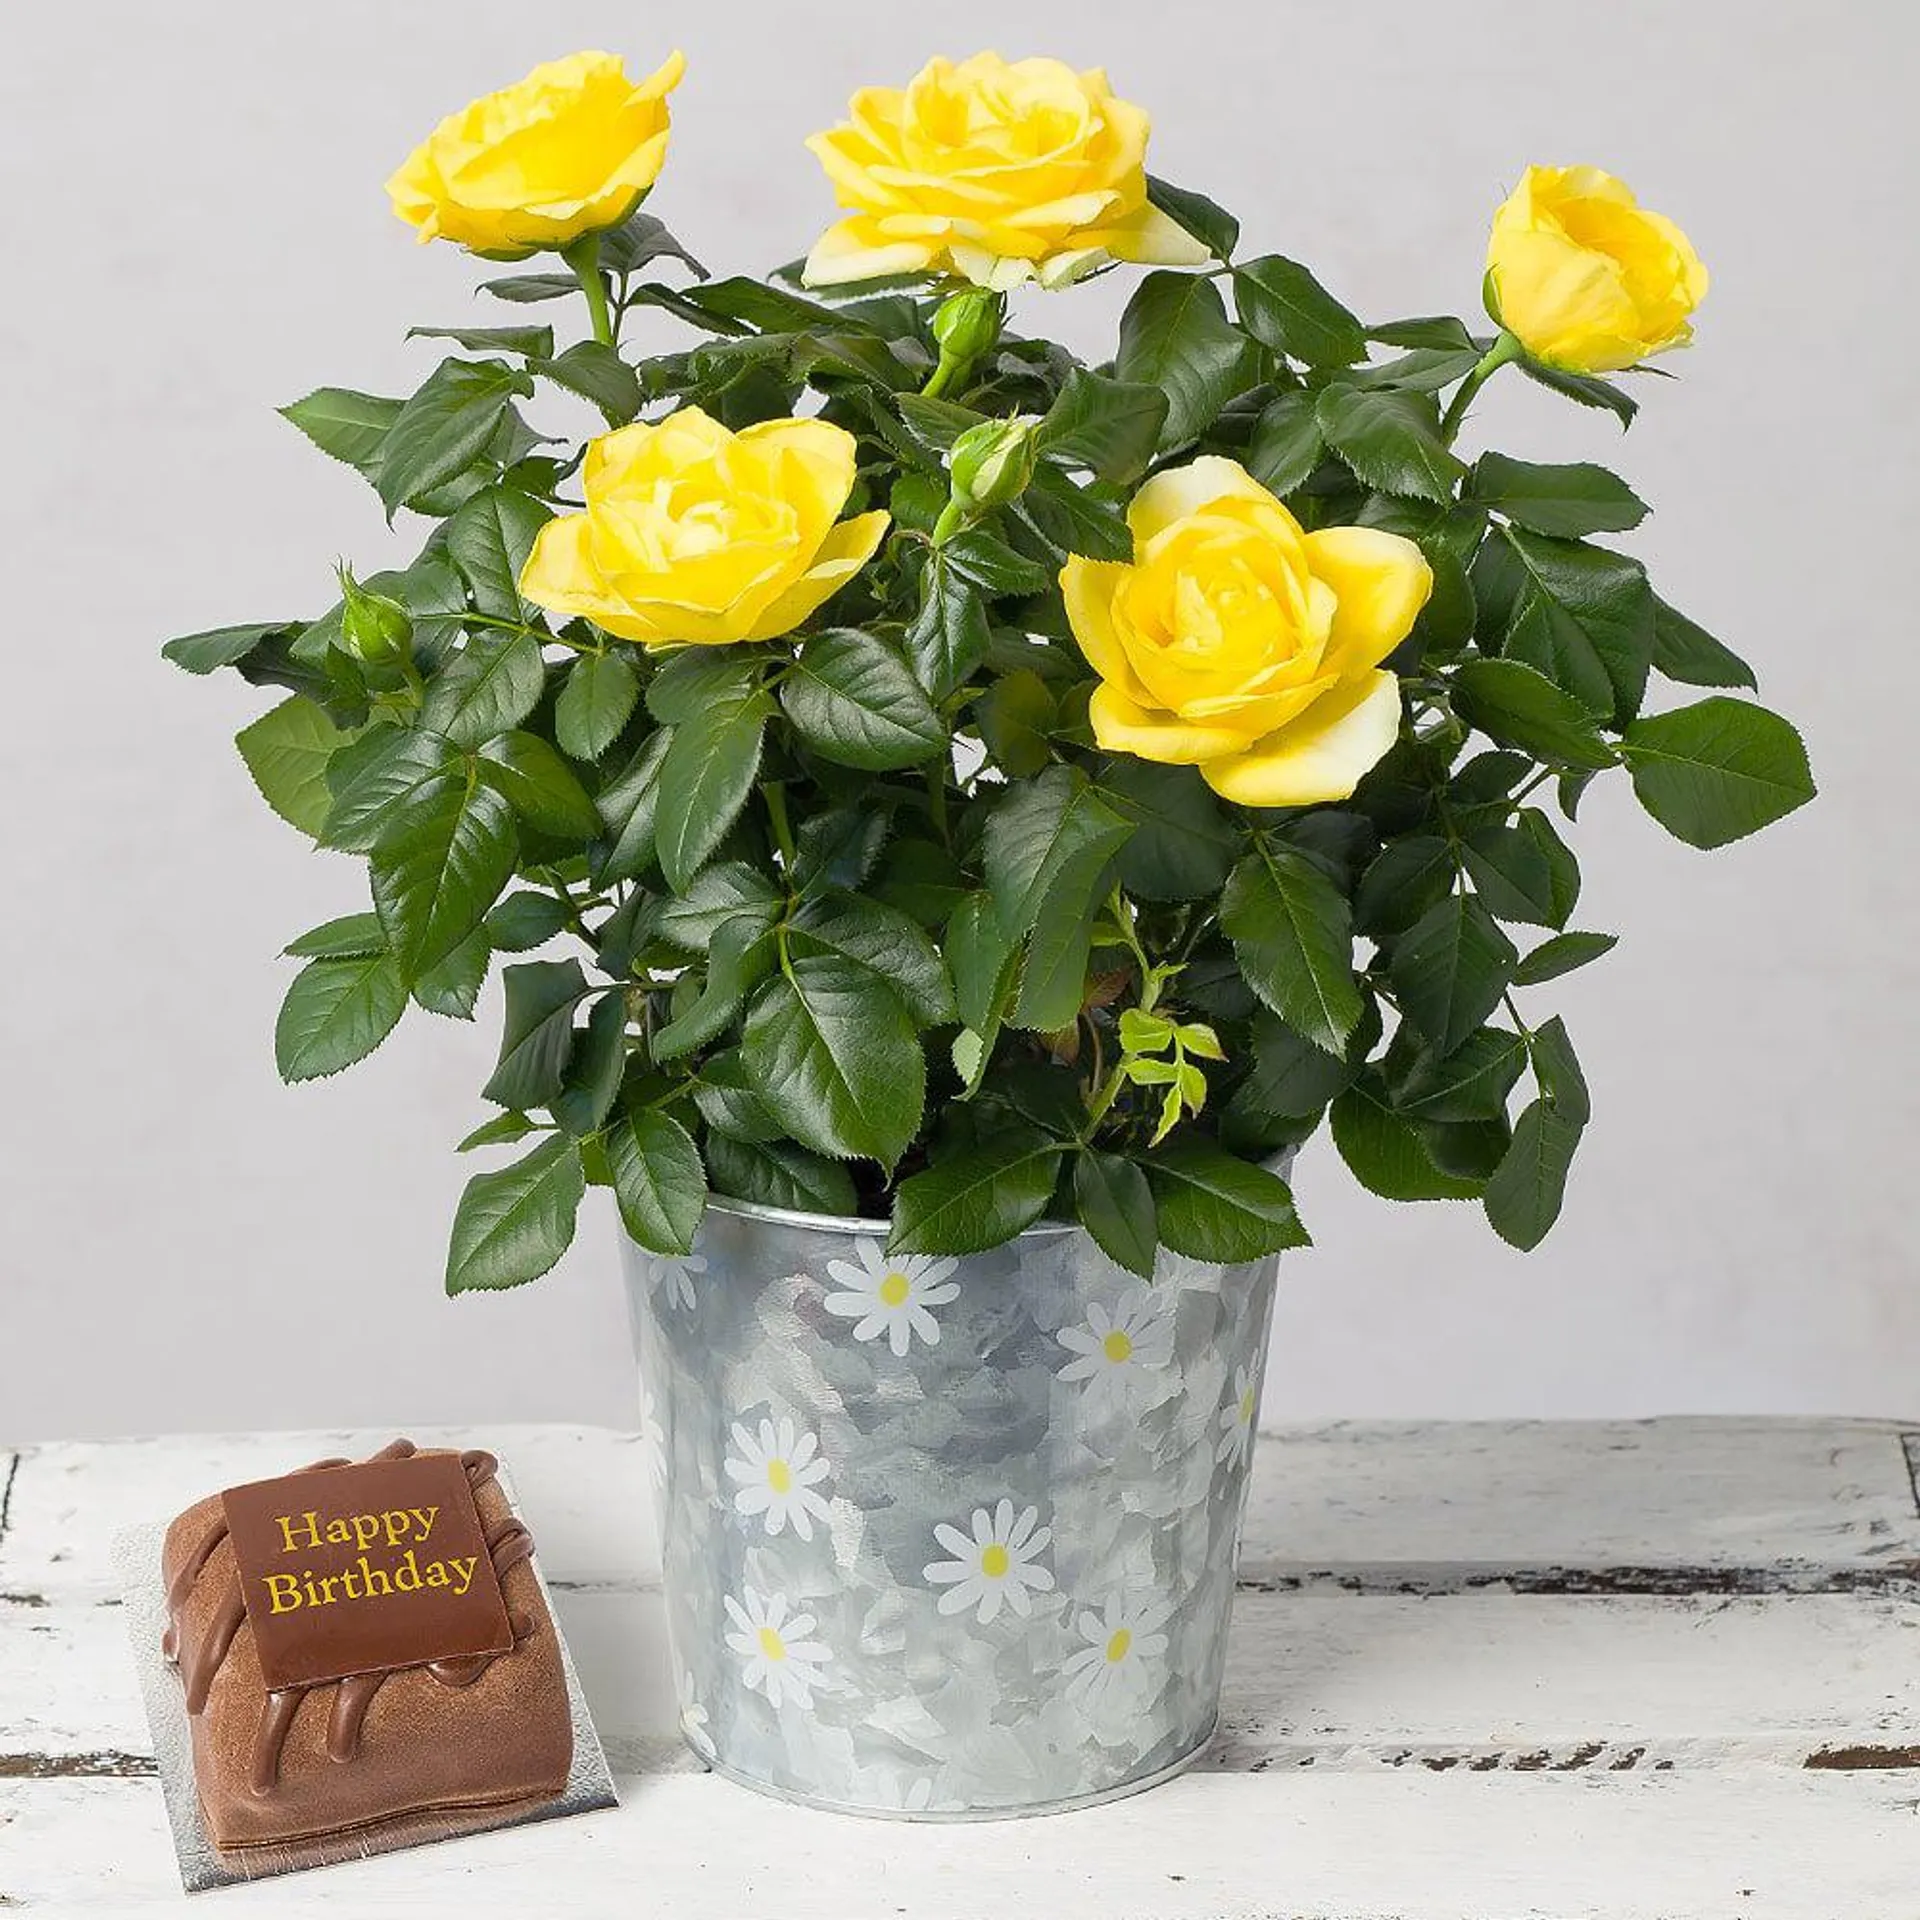 Yellow Rose Birthday Gift